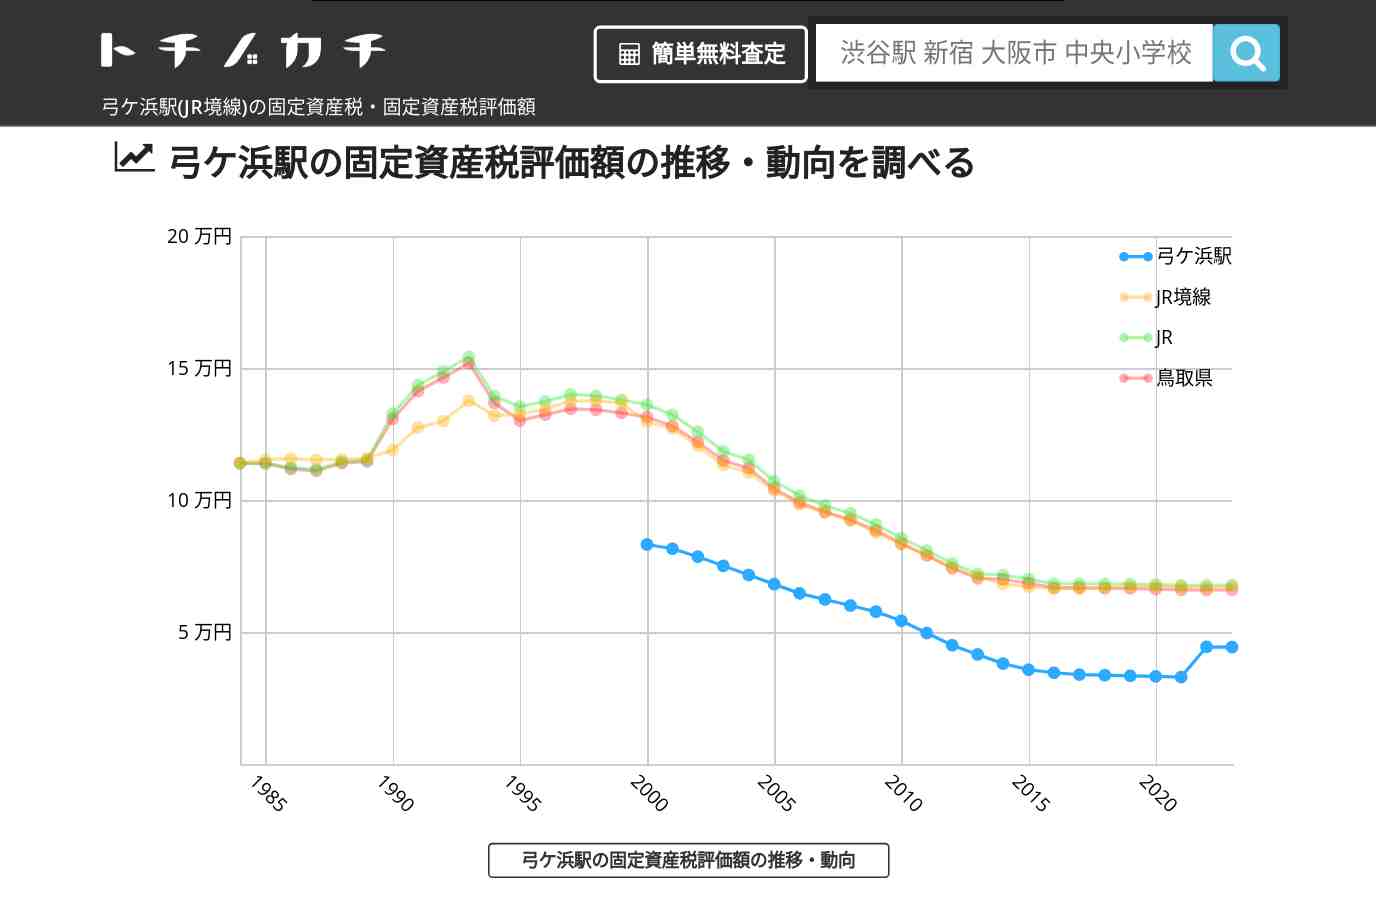 弓ケ浜駅(JR境線)の固定資産税・固定資産税評価額 | トチノカチ